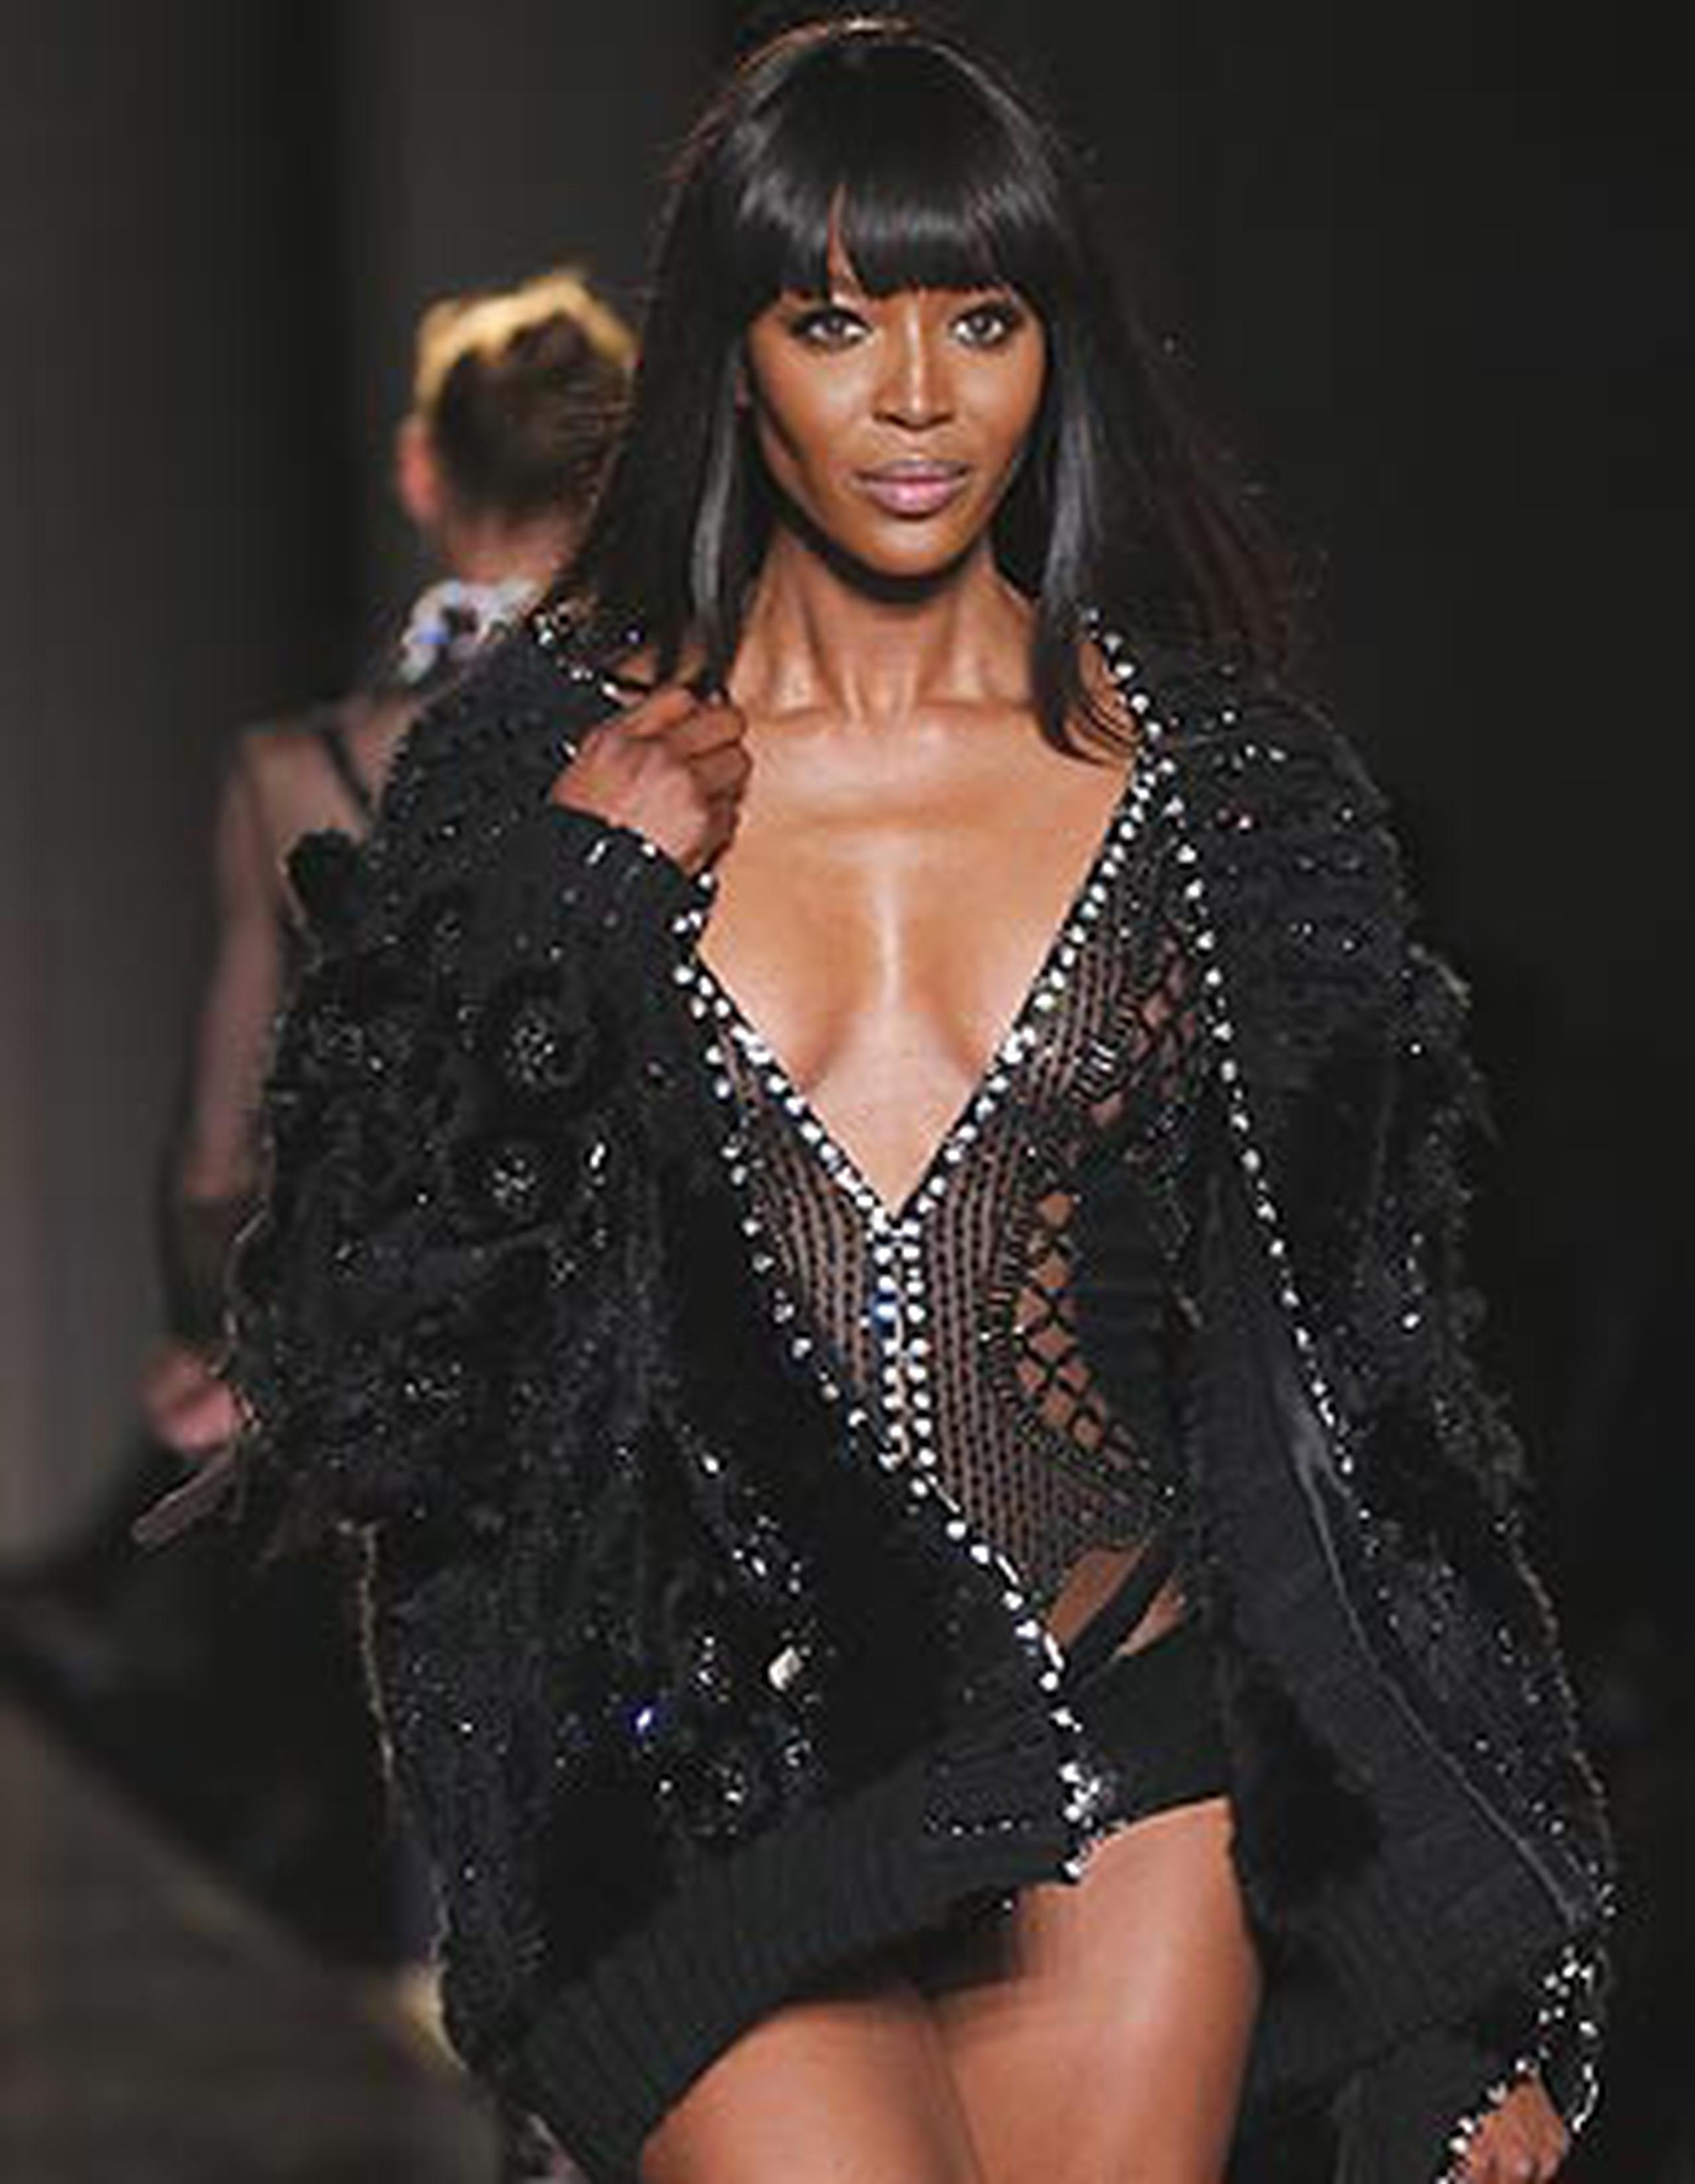 naomi Campbell se puso como objetivo bajar de peso para deslumbrar en pasarela con los diseños de Versace. (AP/Archivo/Jacques Brinon)